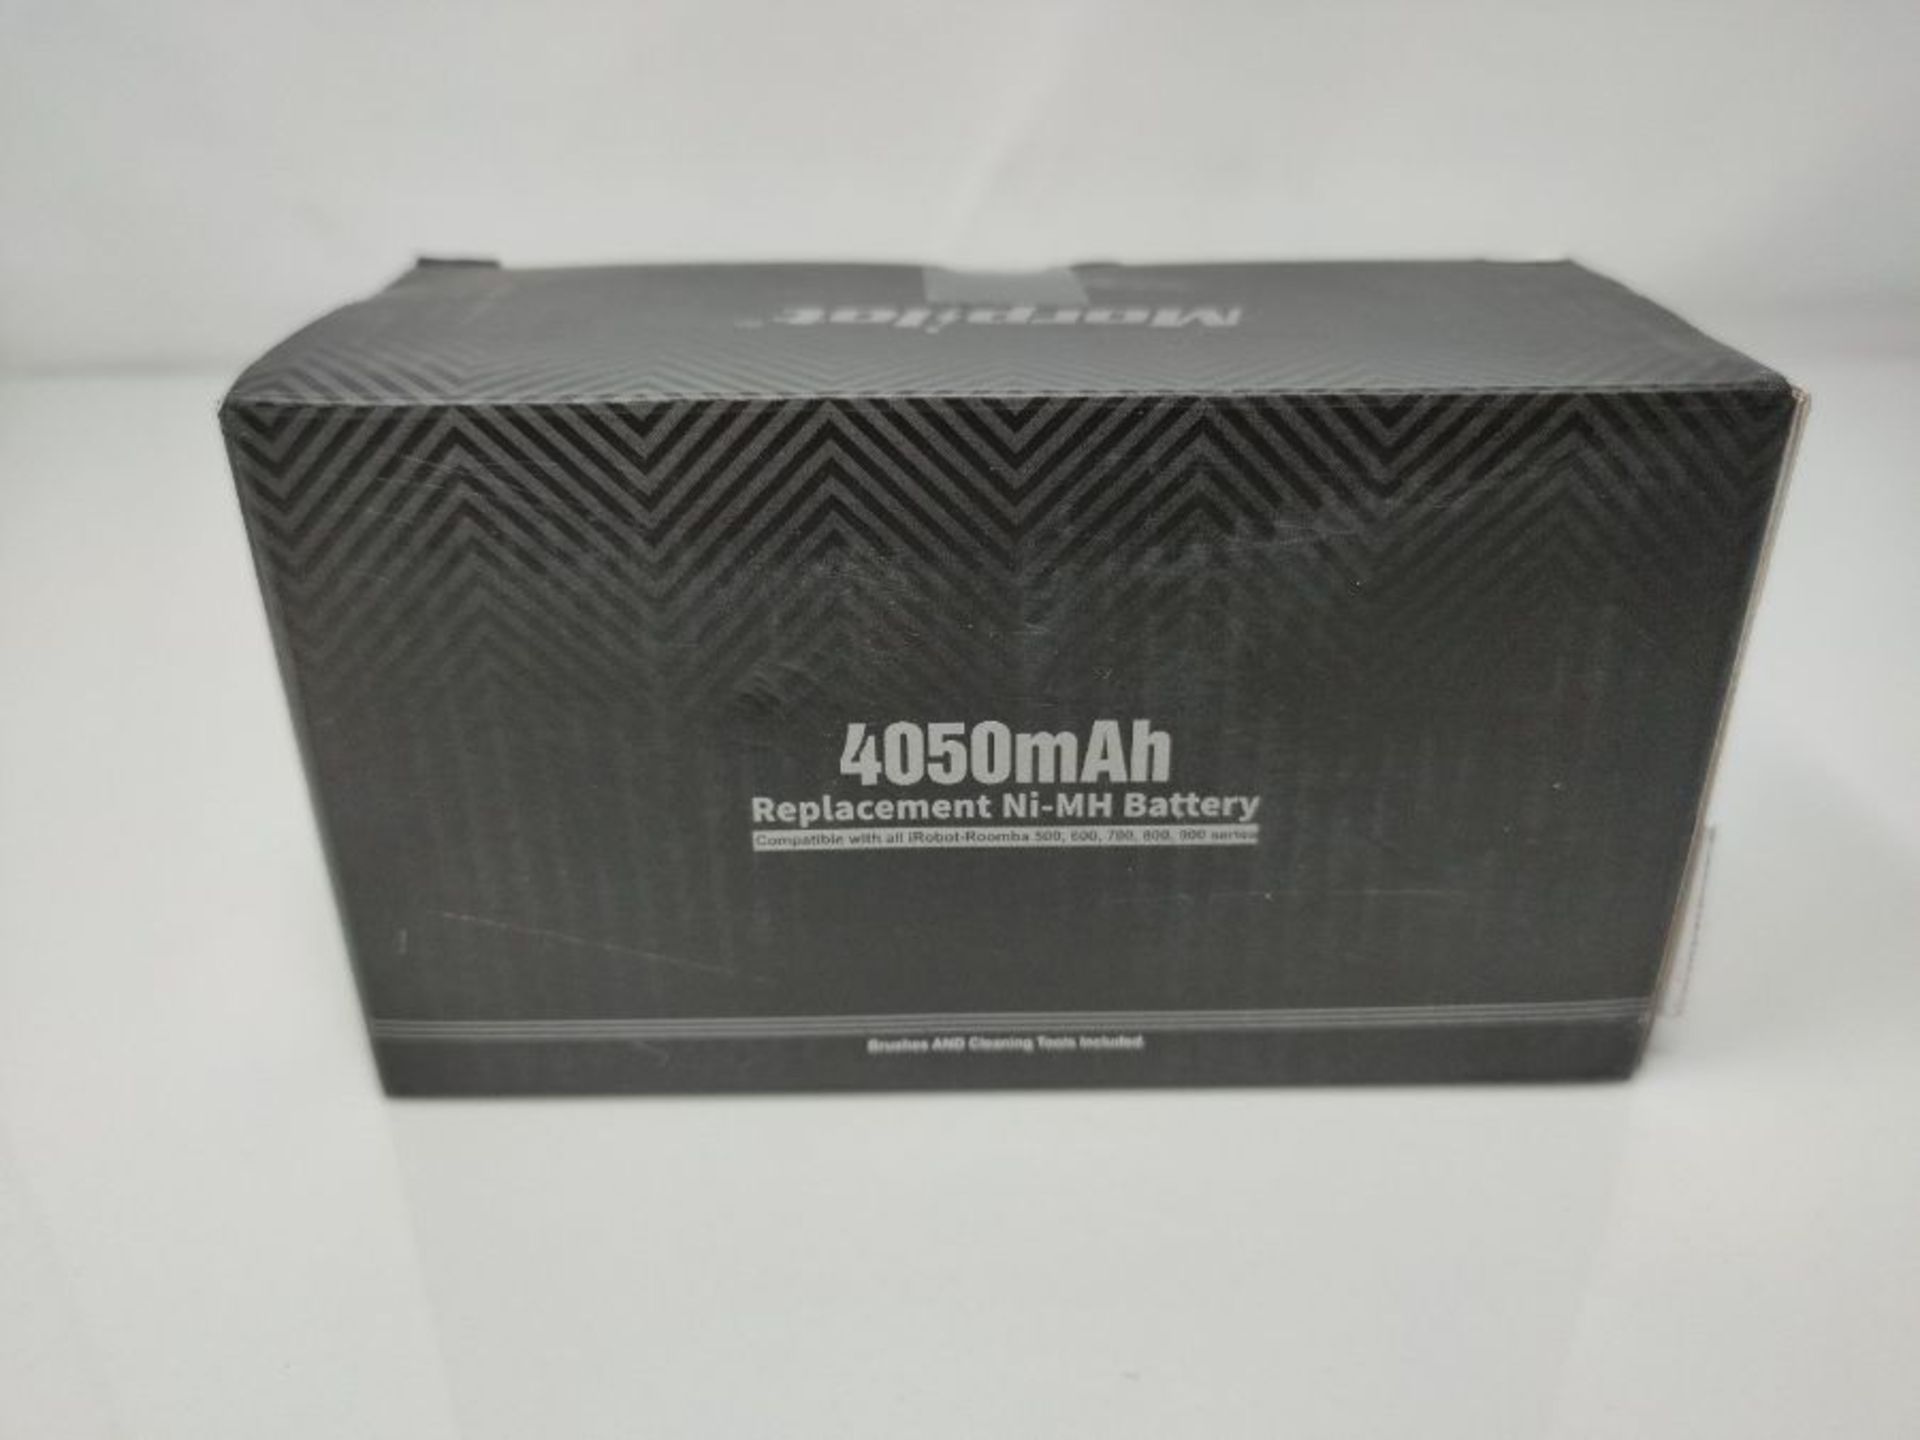 morpilot Batteria di Ricambio Ni-MH 4050mAh 14.4V Compatibile per Aspirapolvere 500 60 - Image 2 of 3